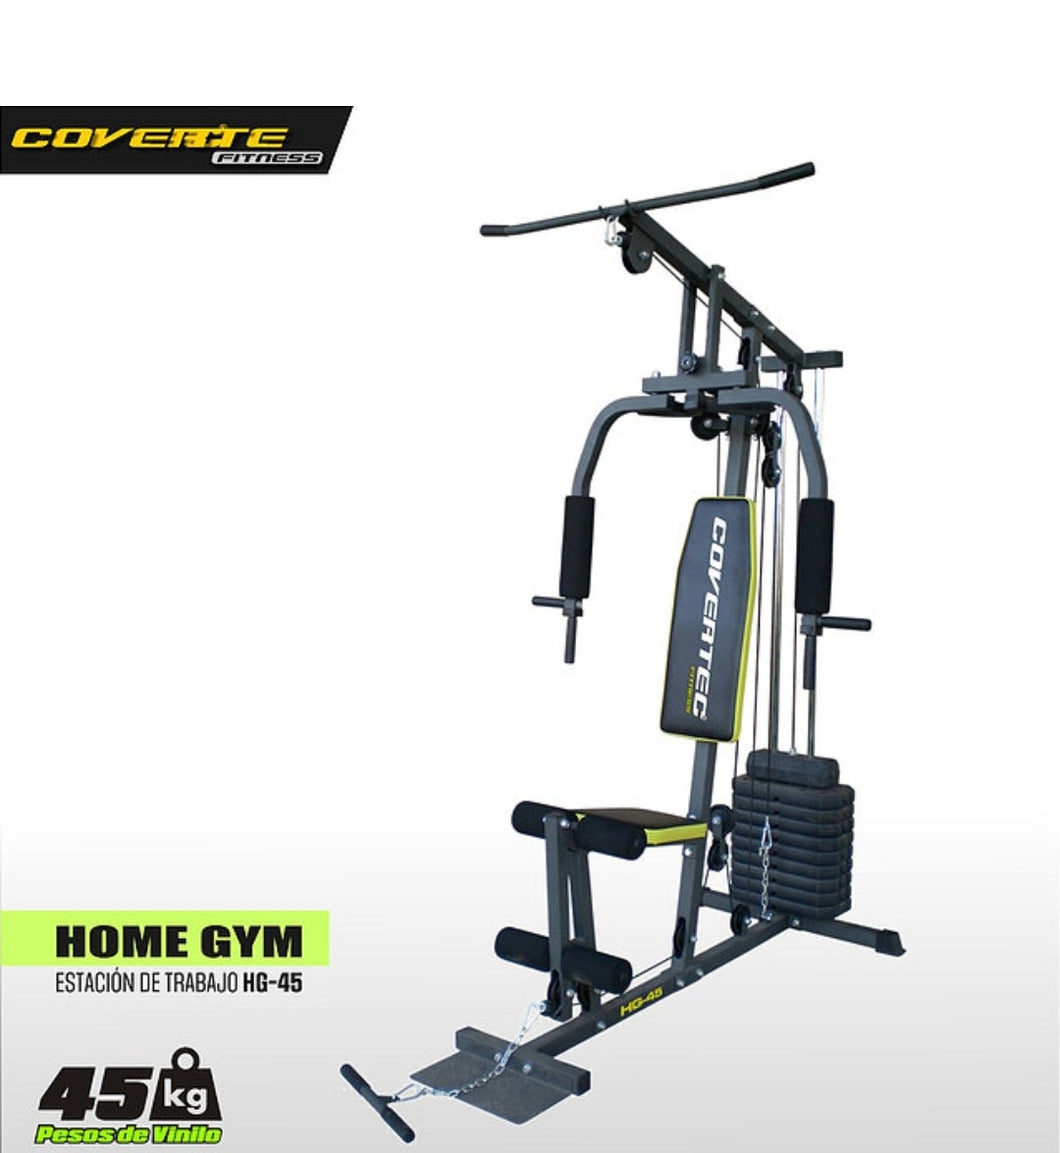 Home Gym 45 kg